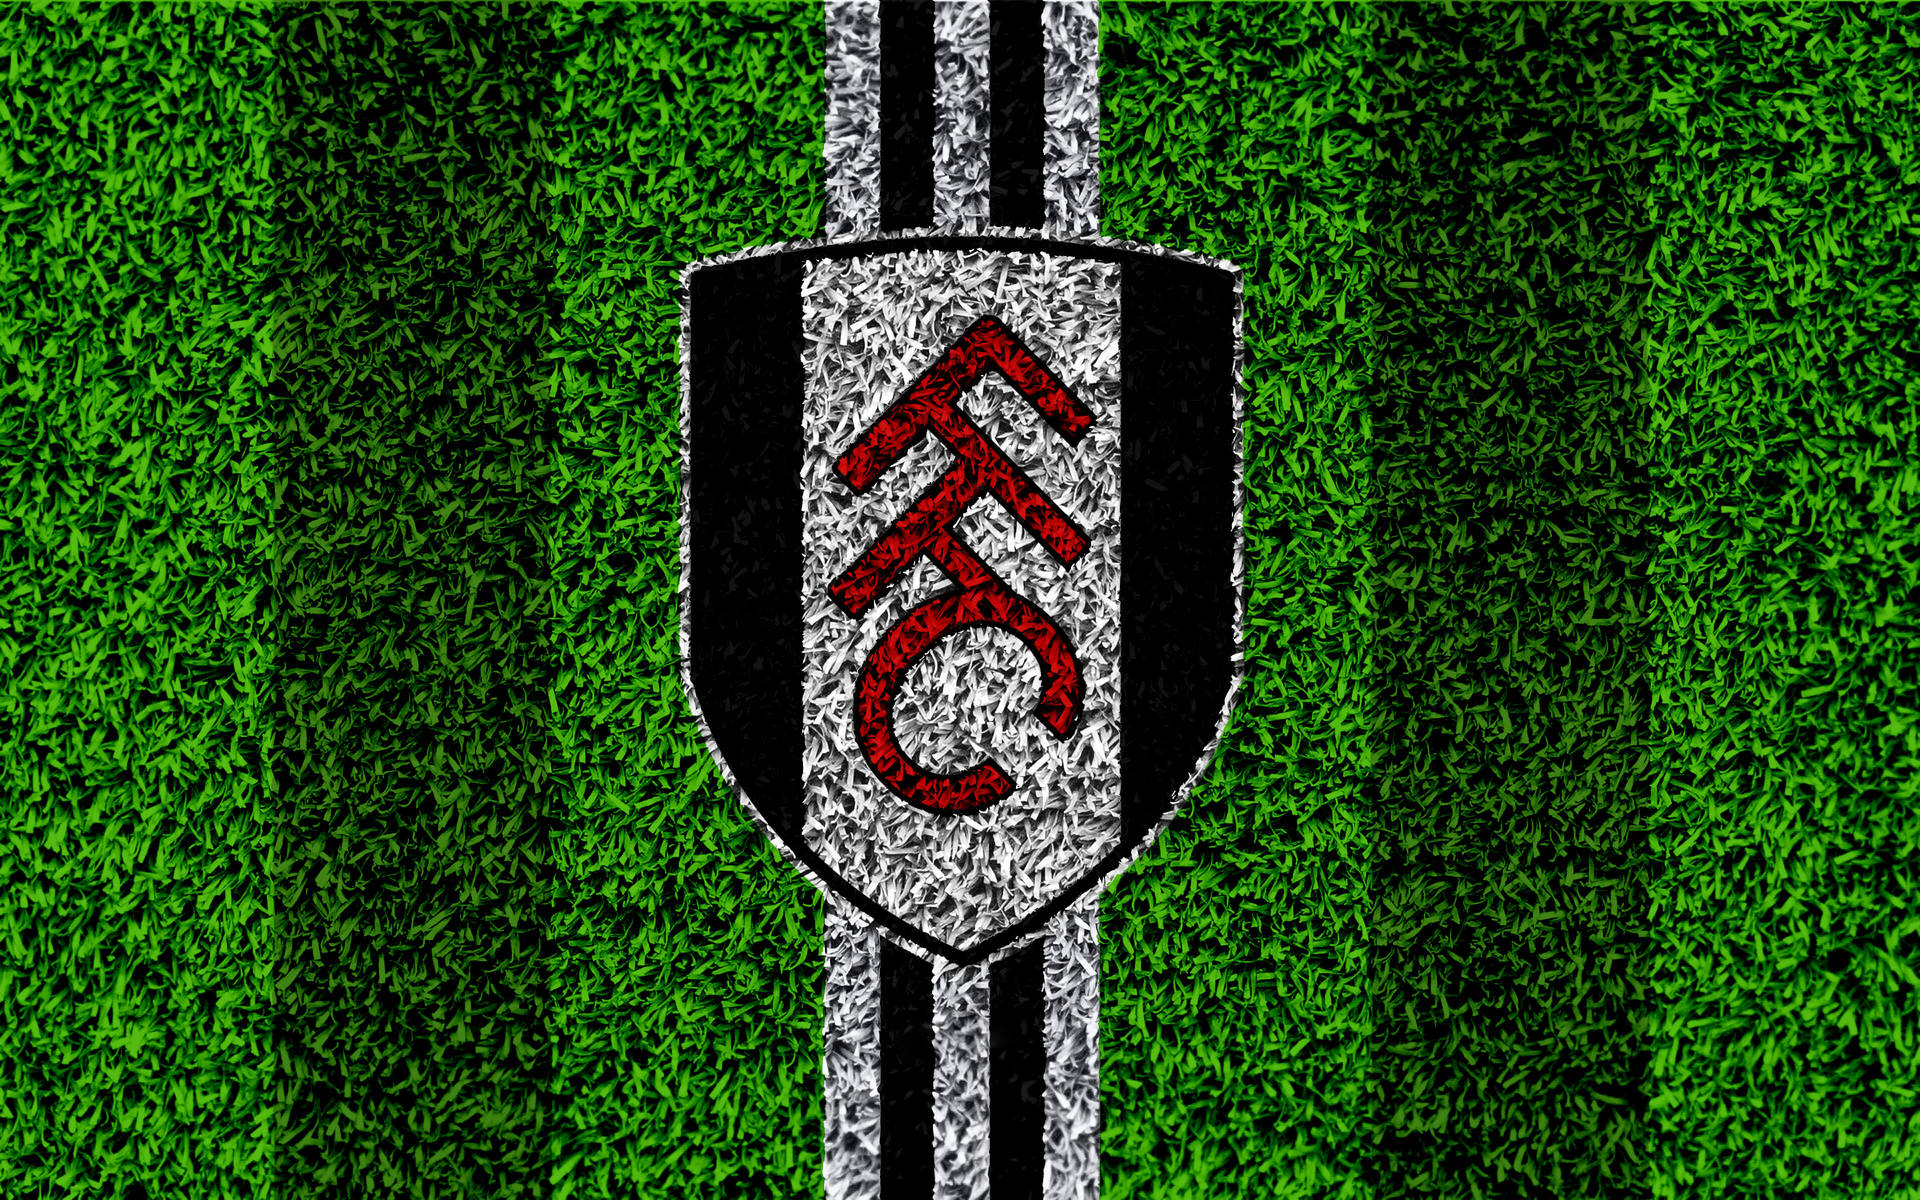 Escudodel Fulham Fc En El Césped. Fondo de pantalla